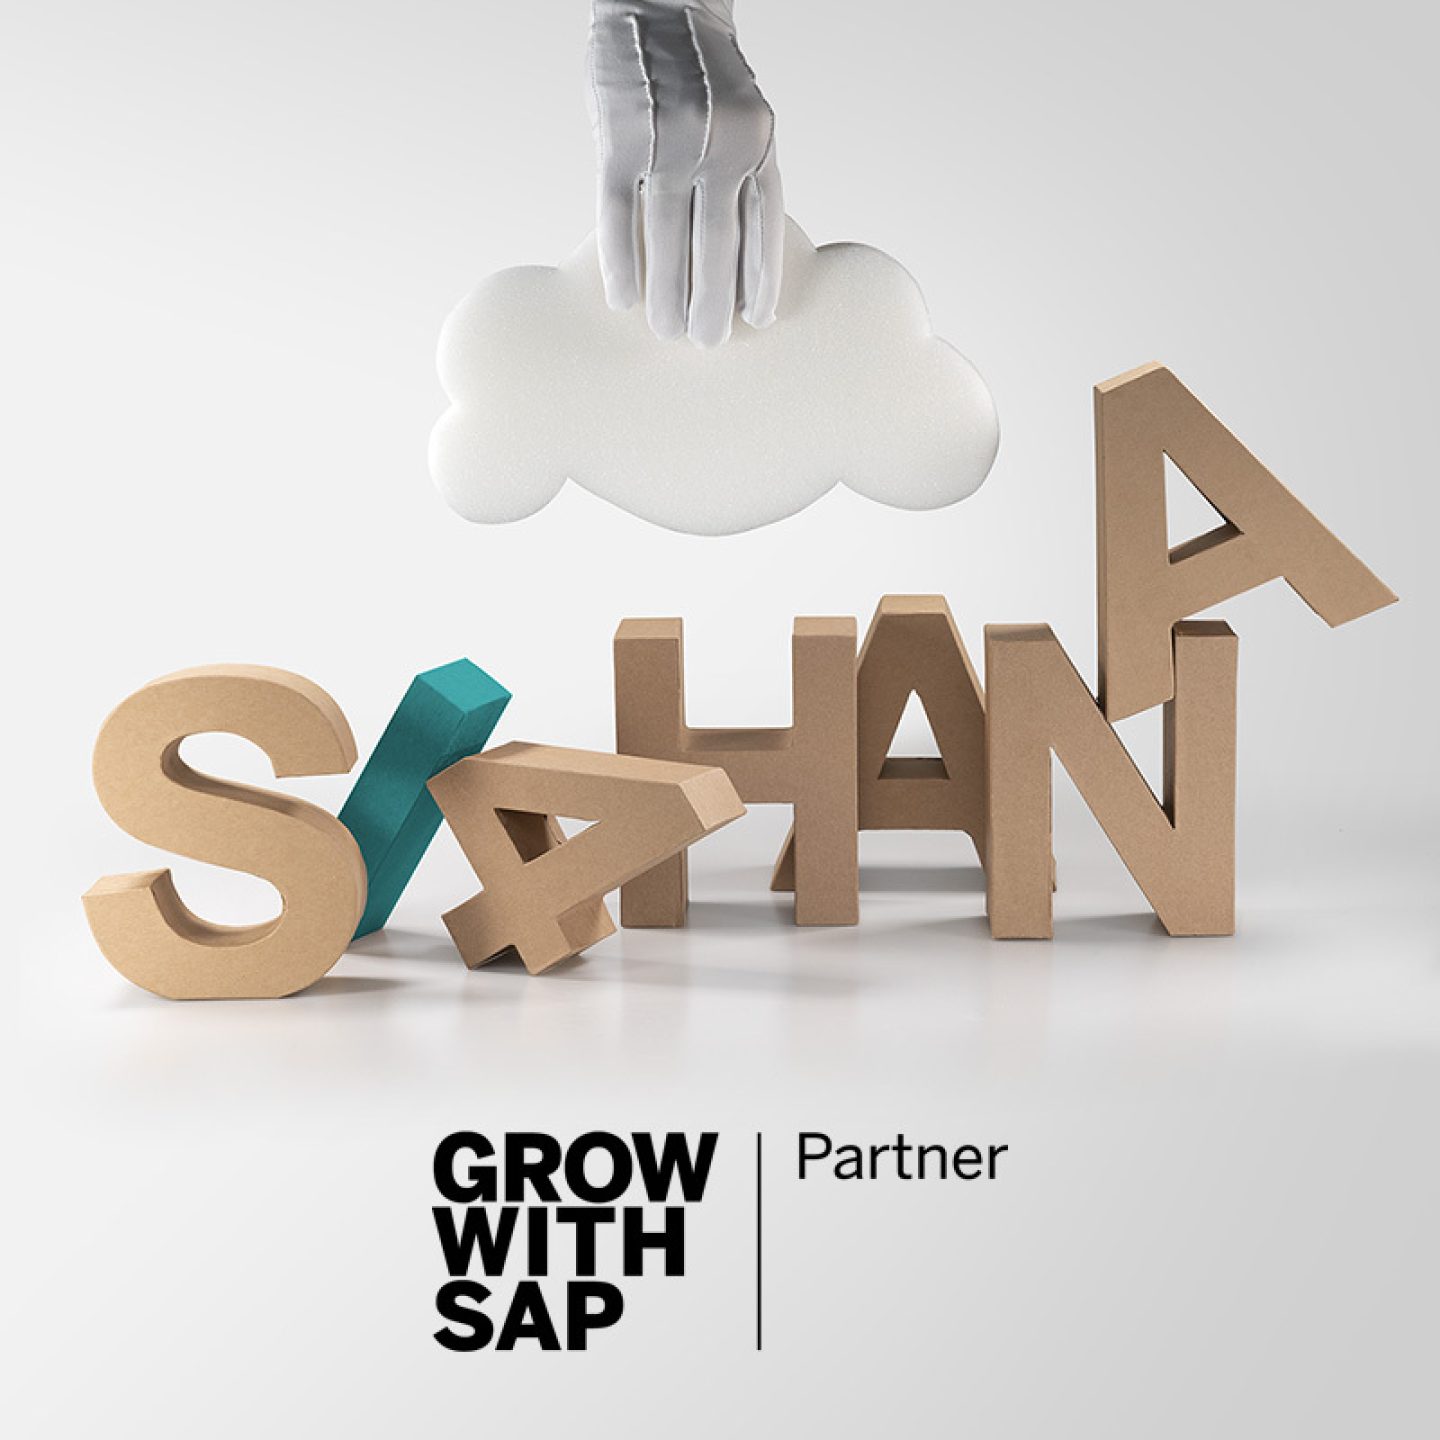 Teaser sap s4hana cloud grow with sap